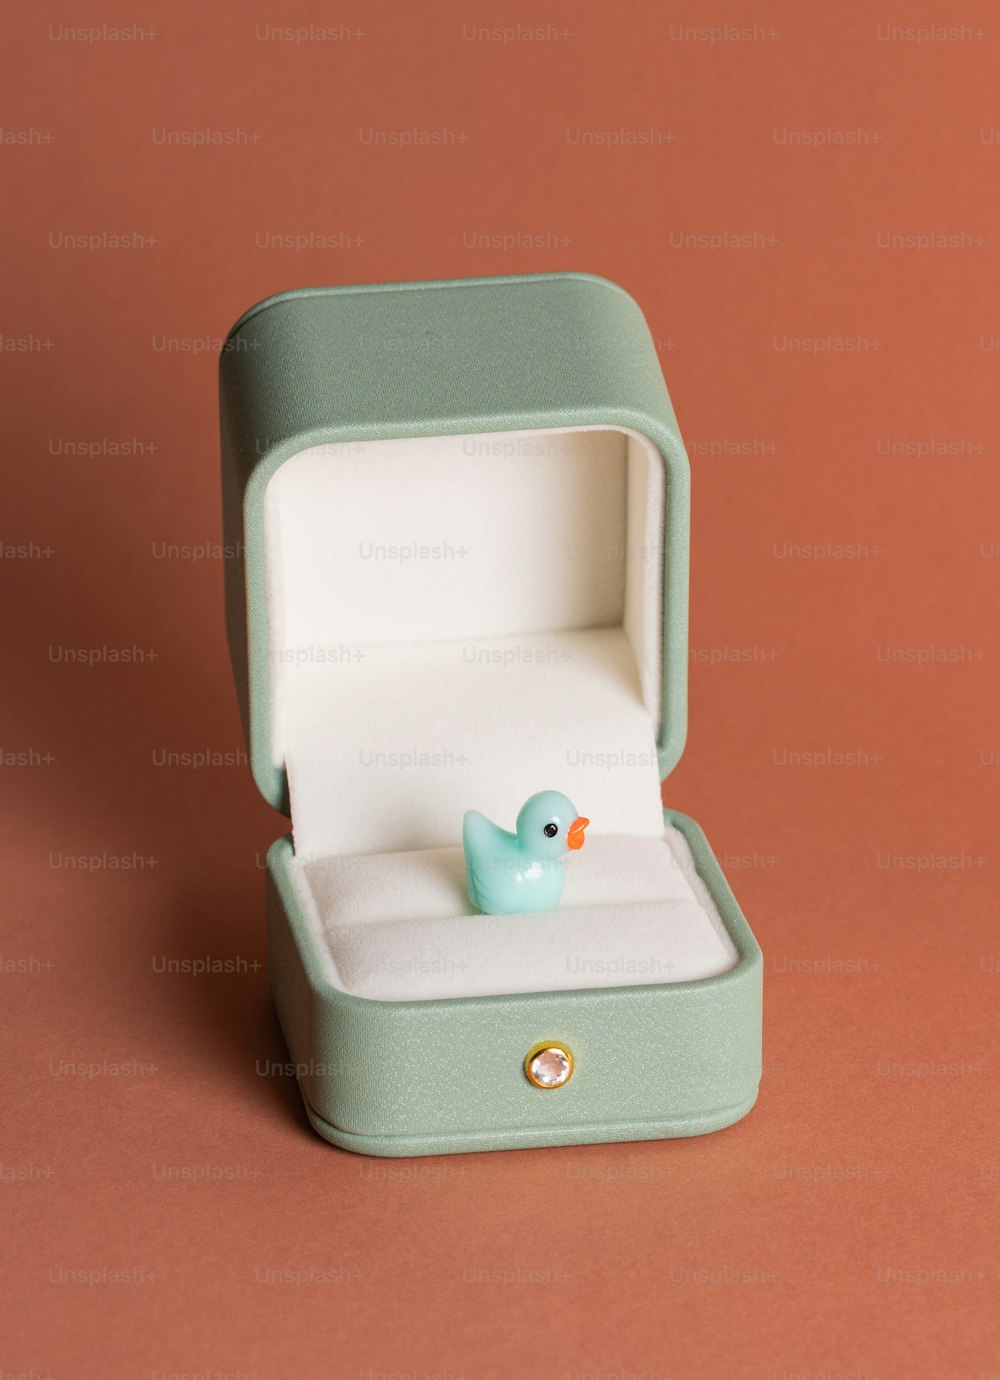 Un petit canard en caoutchouc bleu dans une boîte verte